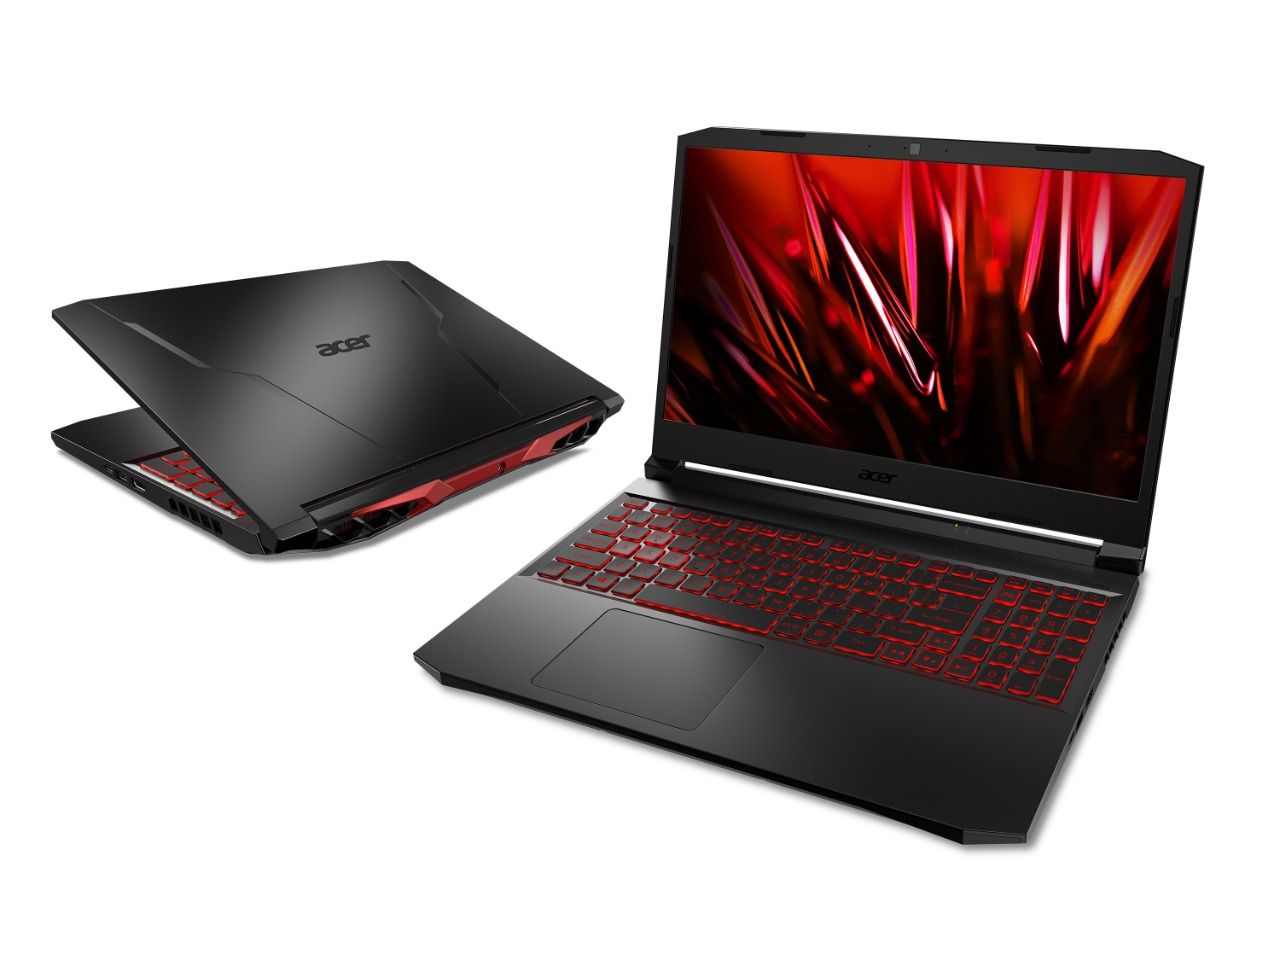 Sederet Keunggulan Laptop Gaming Acer Nitro 5 Harga Rp 13 Juta